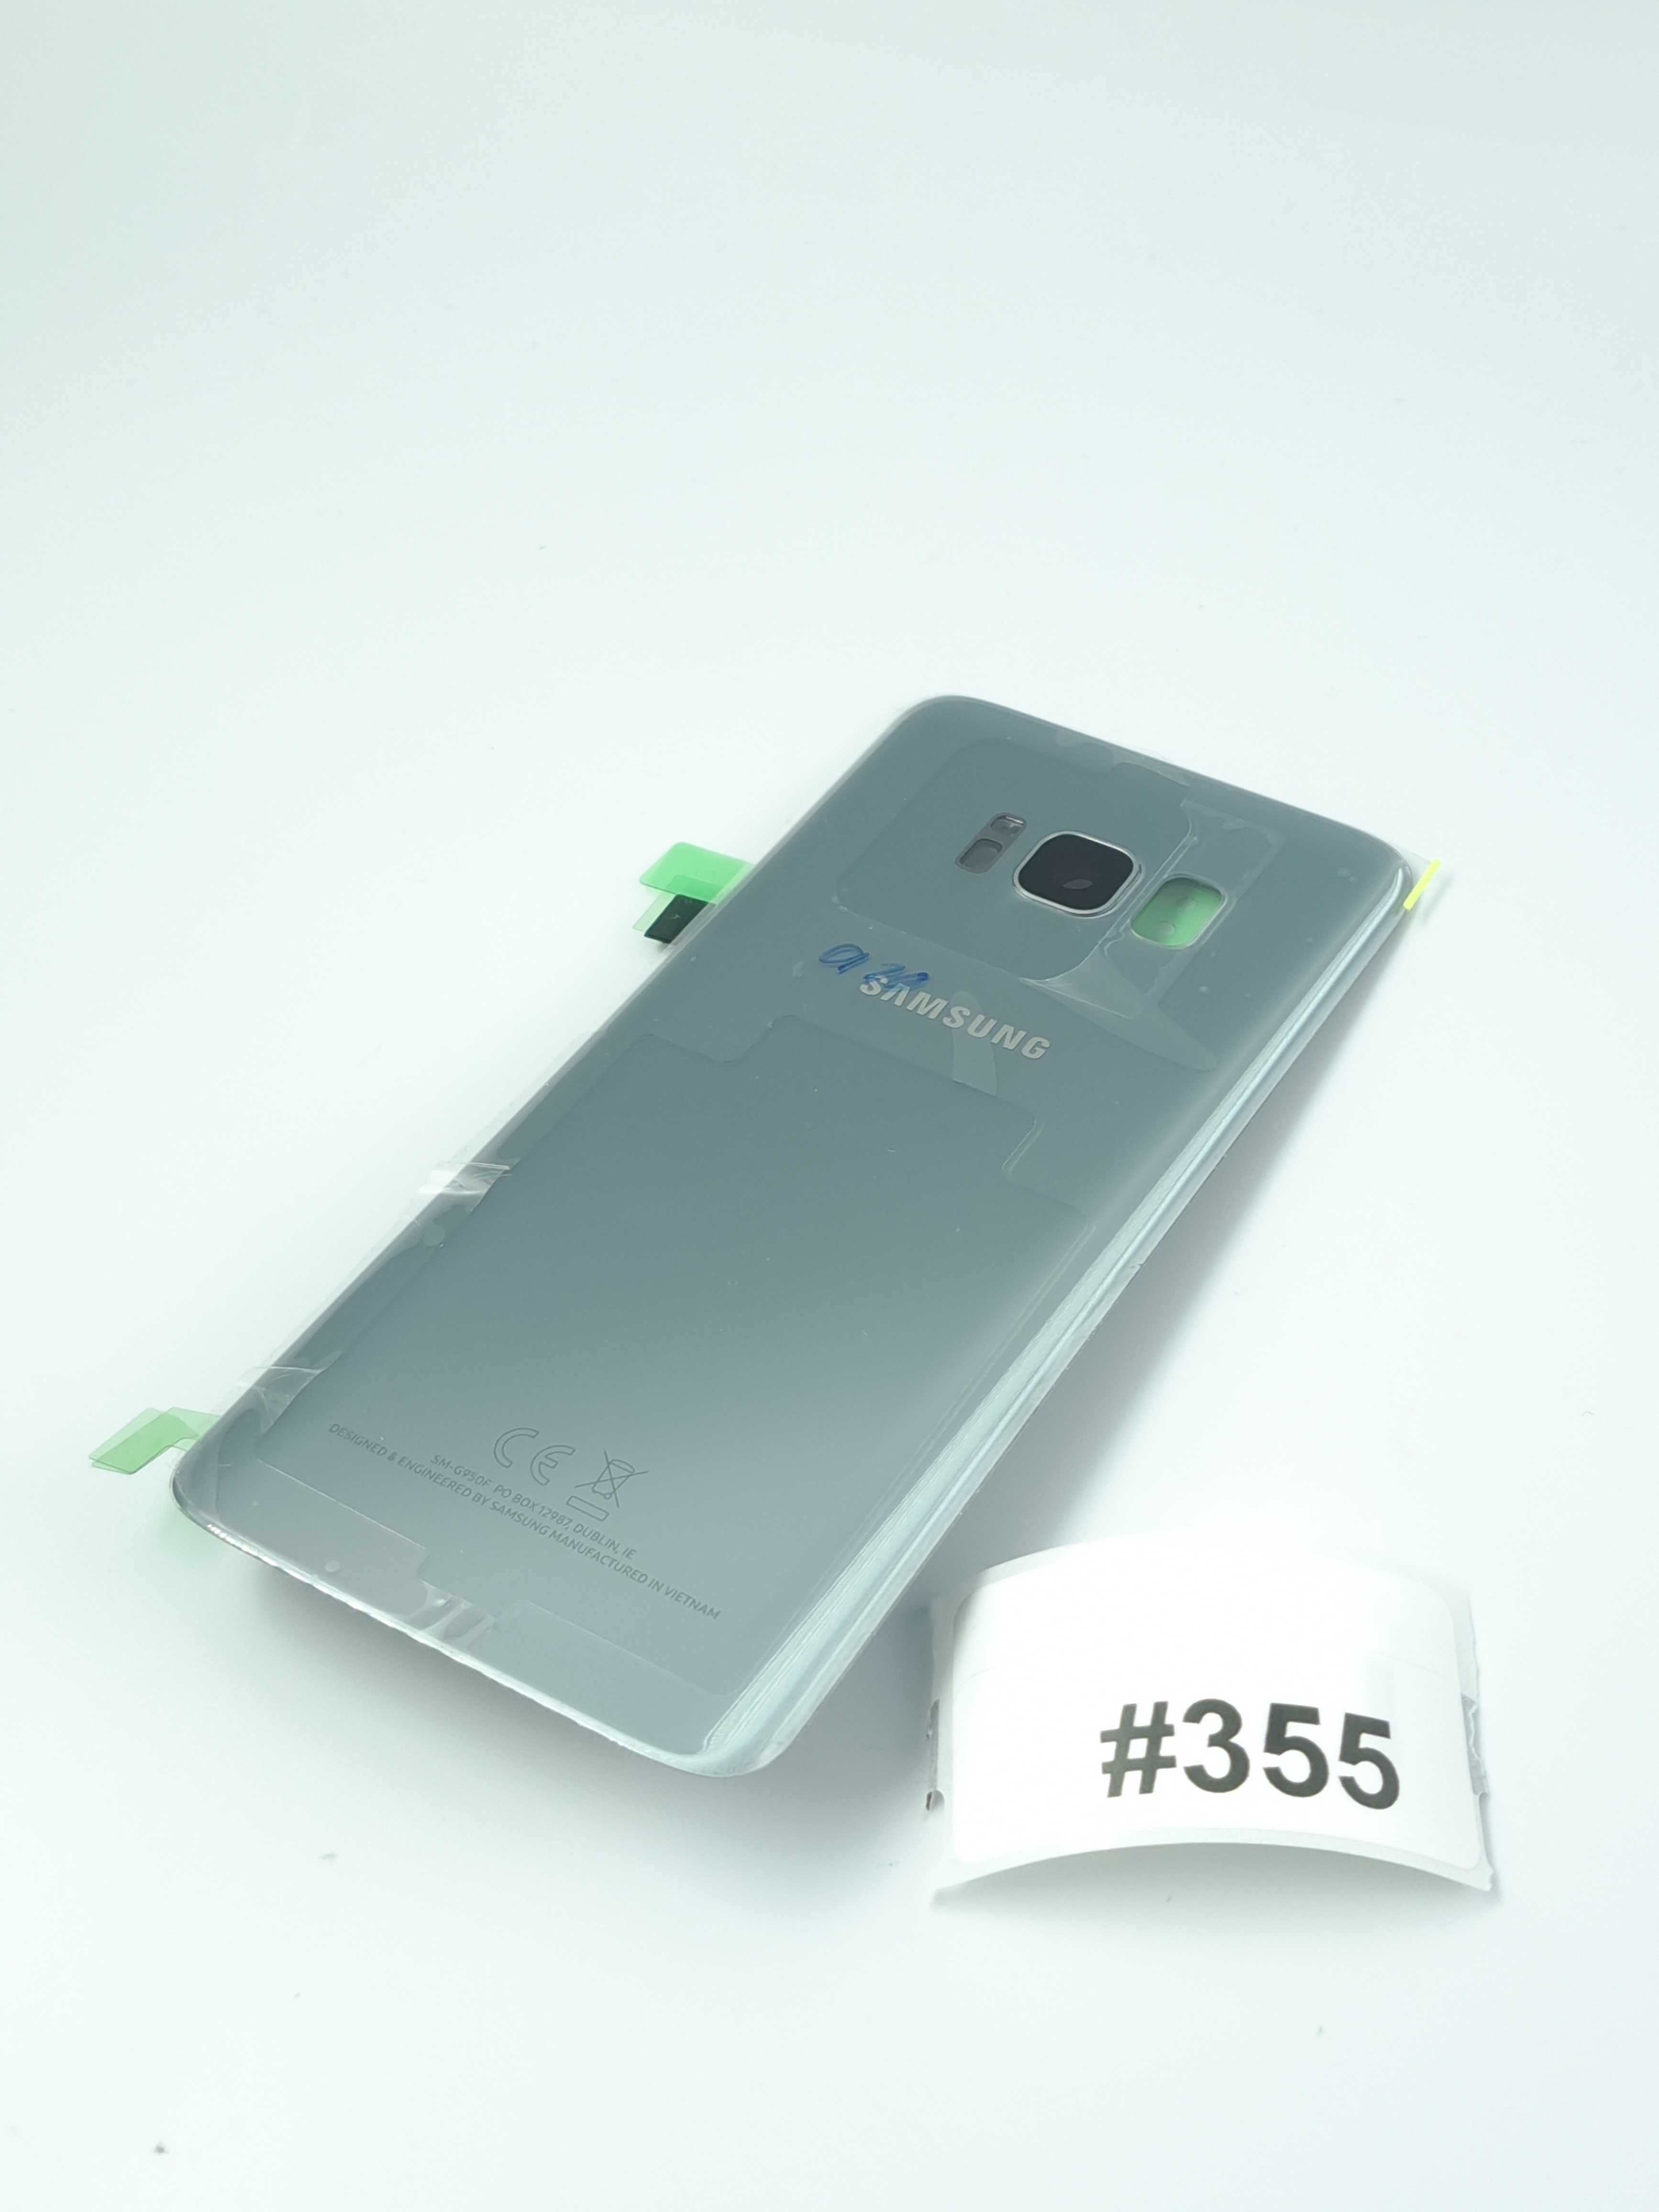 Nowa Oryginalna Klapka Samsung Galaxy S8 G950 Silver Poznań #355